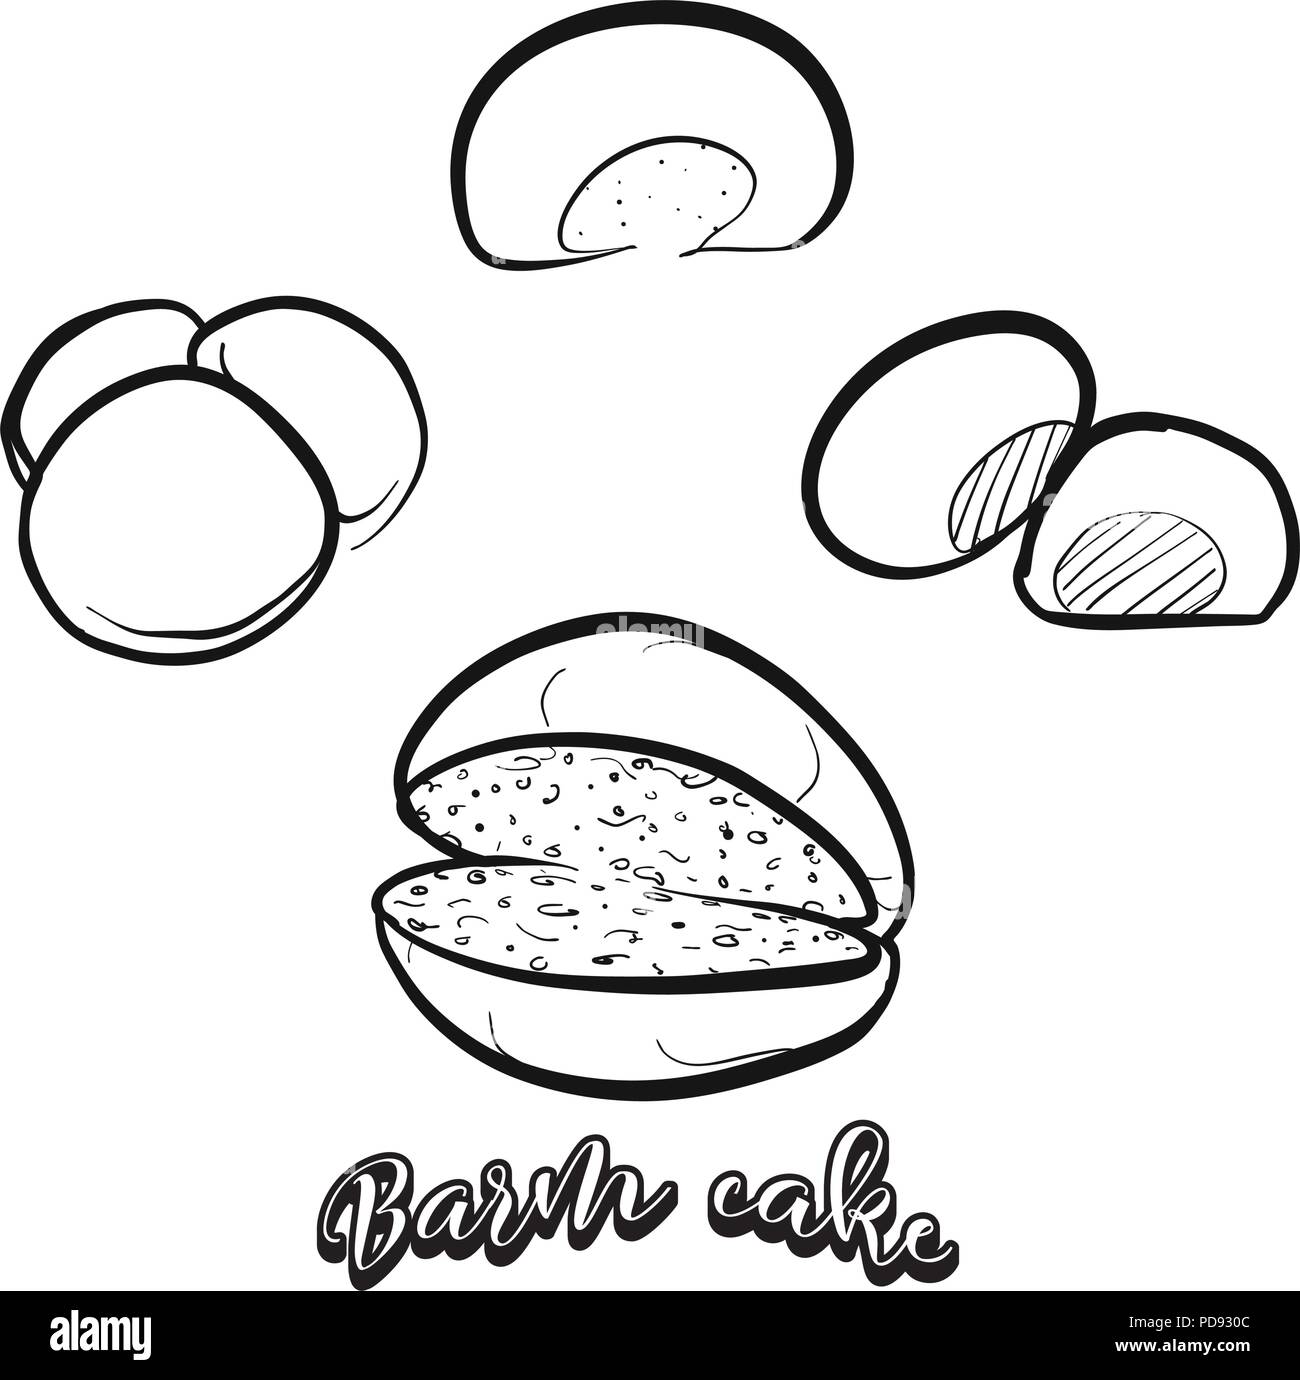 Hand gezeichnete Skizze der Barm Kuchen Brot. Vektor Zeichnung von Hefe Brot essen, in der Regel in Lancashire bekannt. Brot Abbildung Serie. Stock Vektor